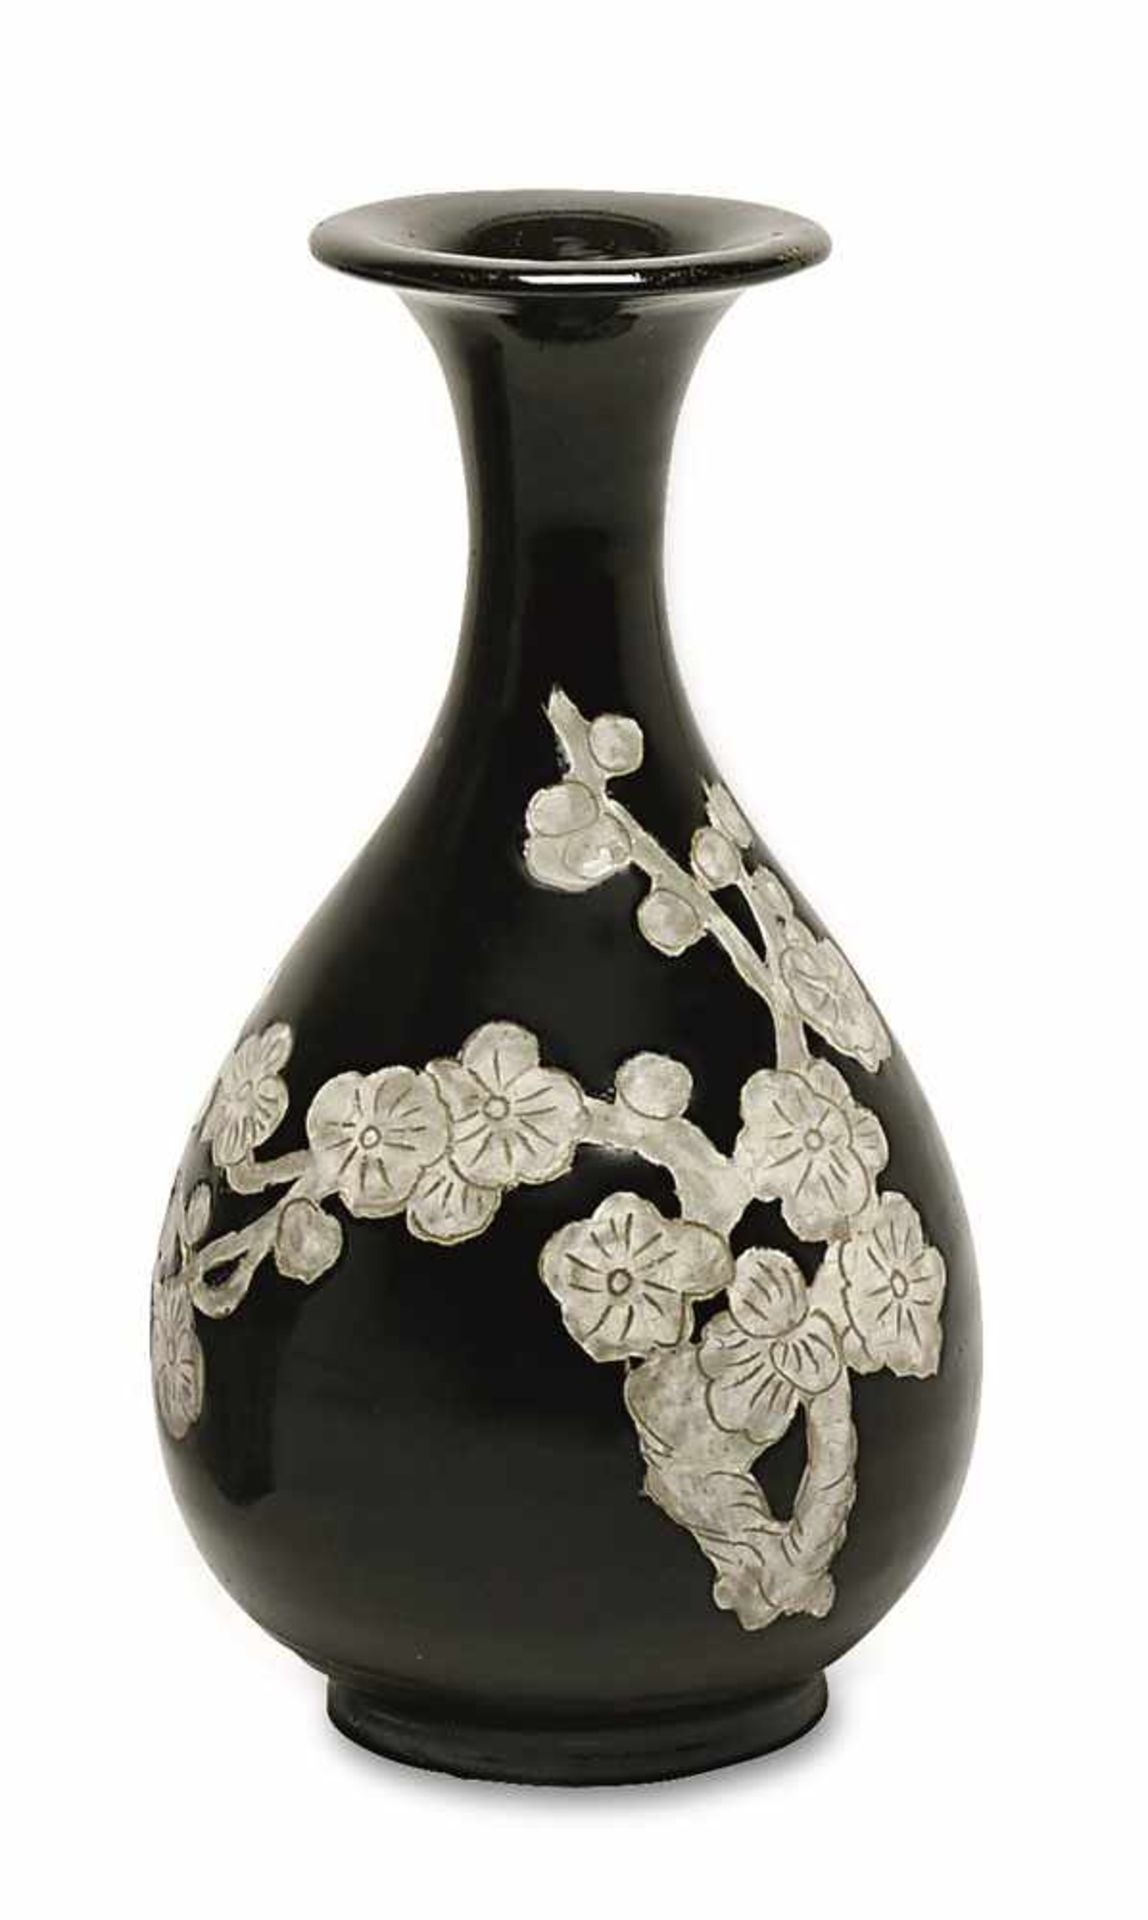 Vase China, im Stil der Ming-Zeit Steinzeug in der Art der Cizhou-Keramiken. Birnform mit